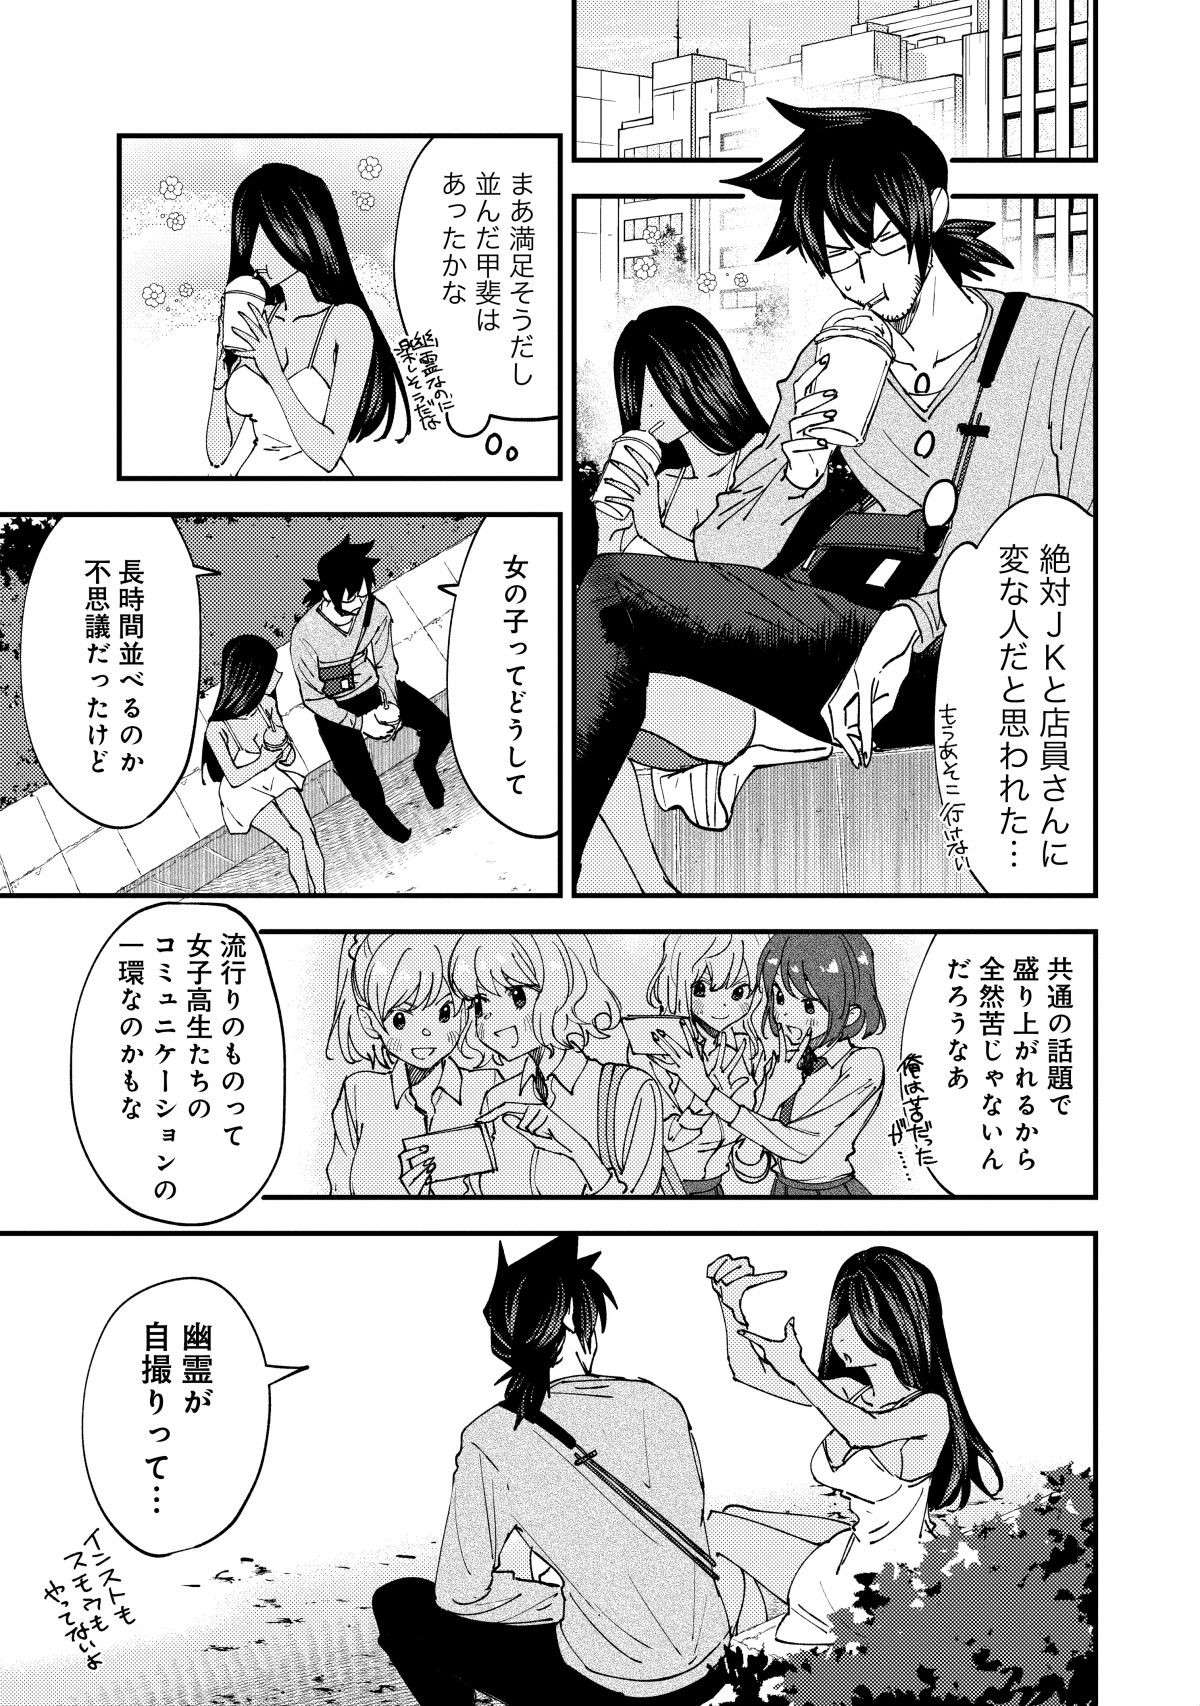 mangaka_onryosan6-3.jpg